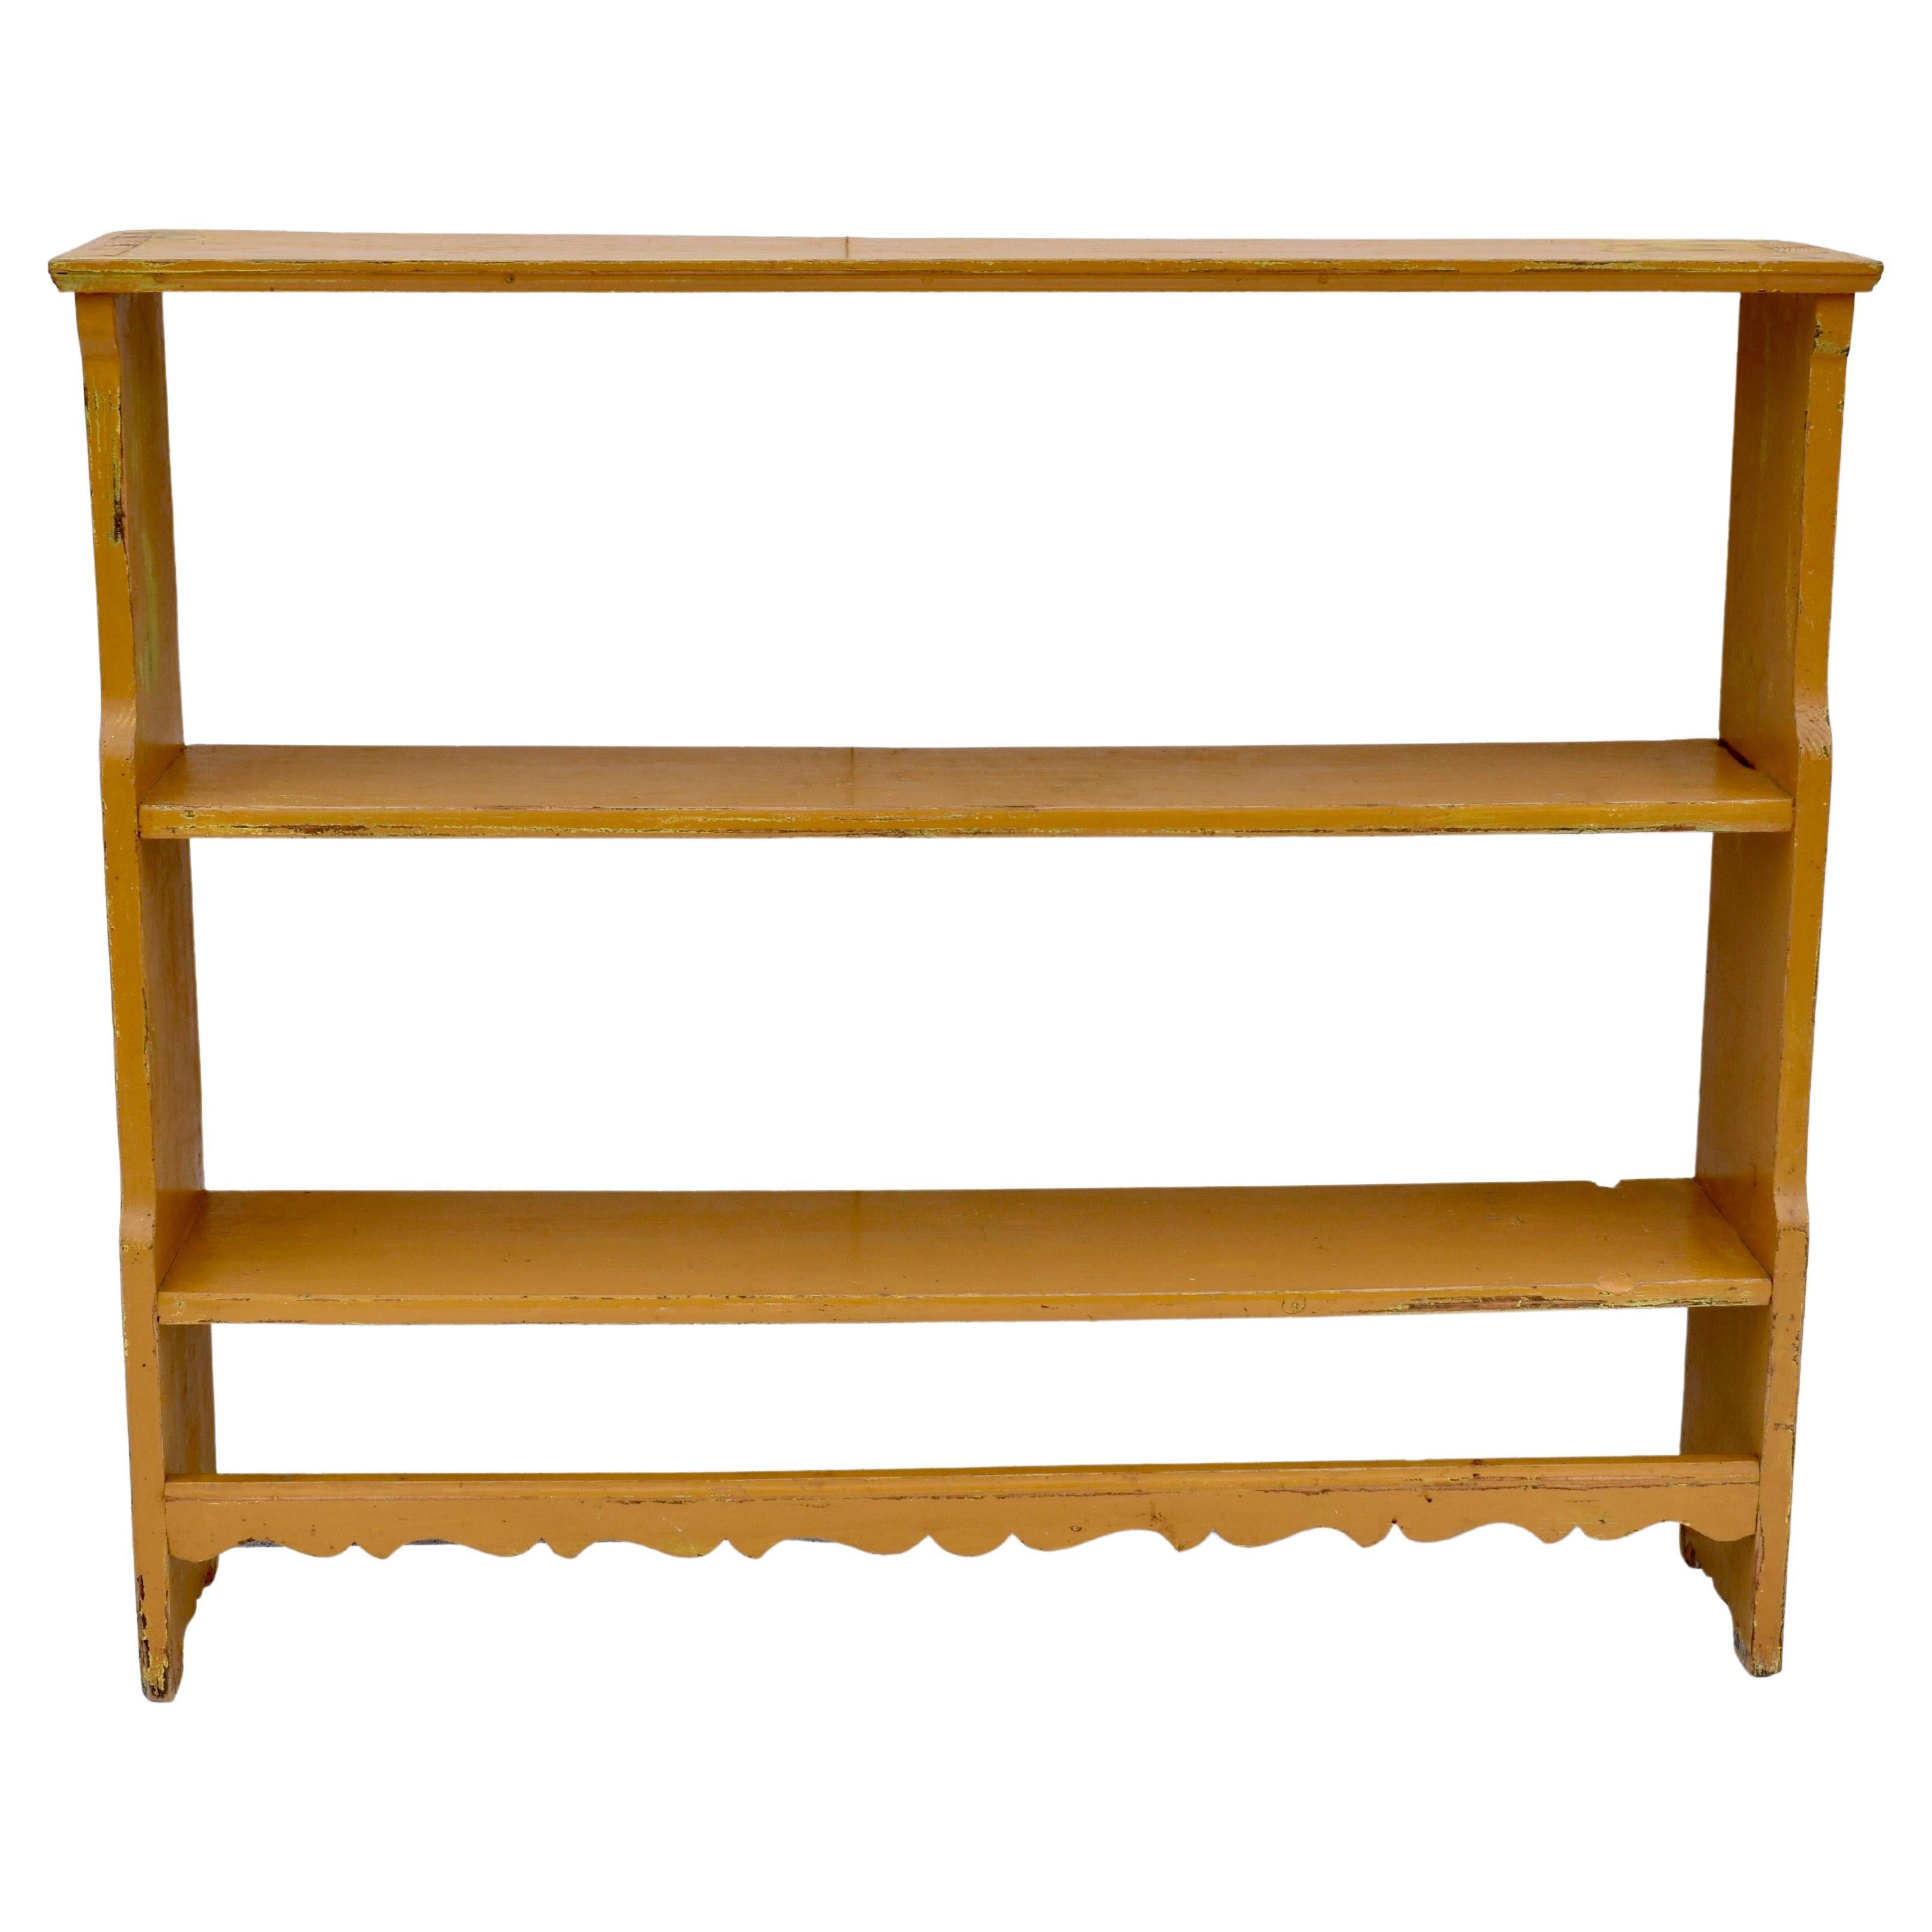 Painted Pine Bookshelves or Utility Shelves